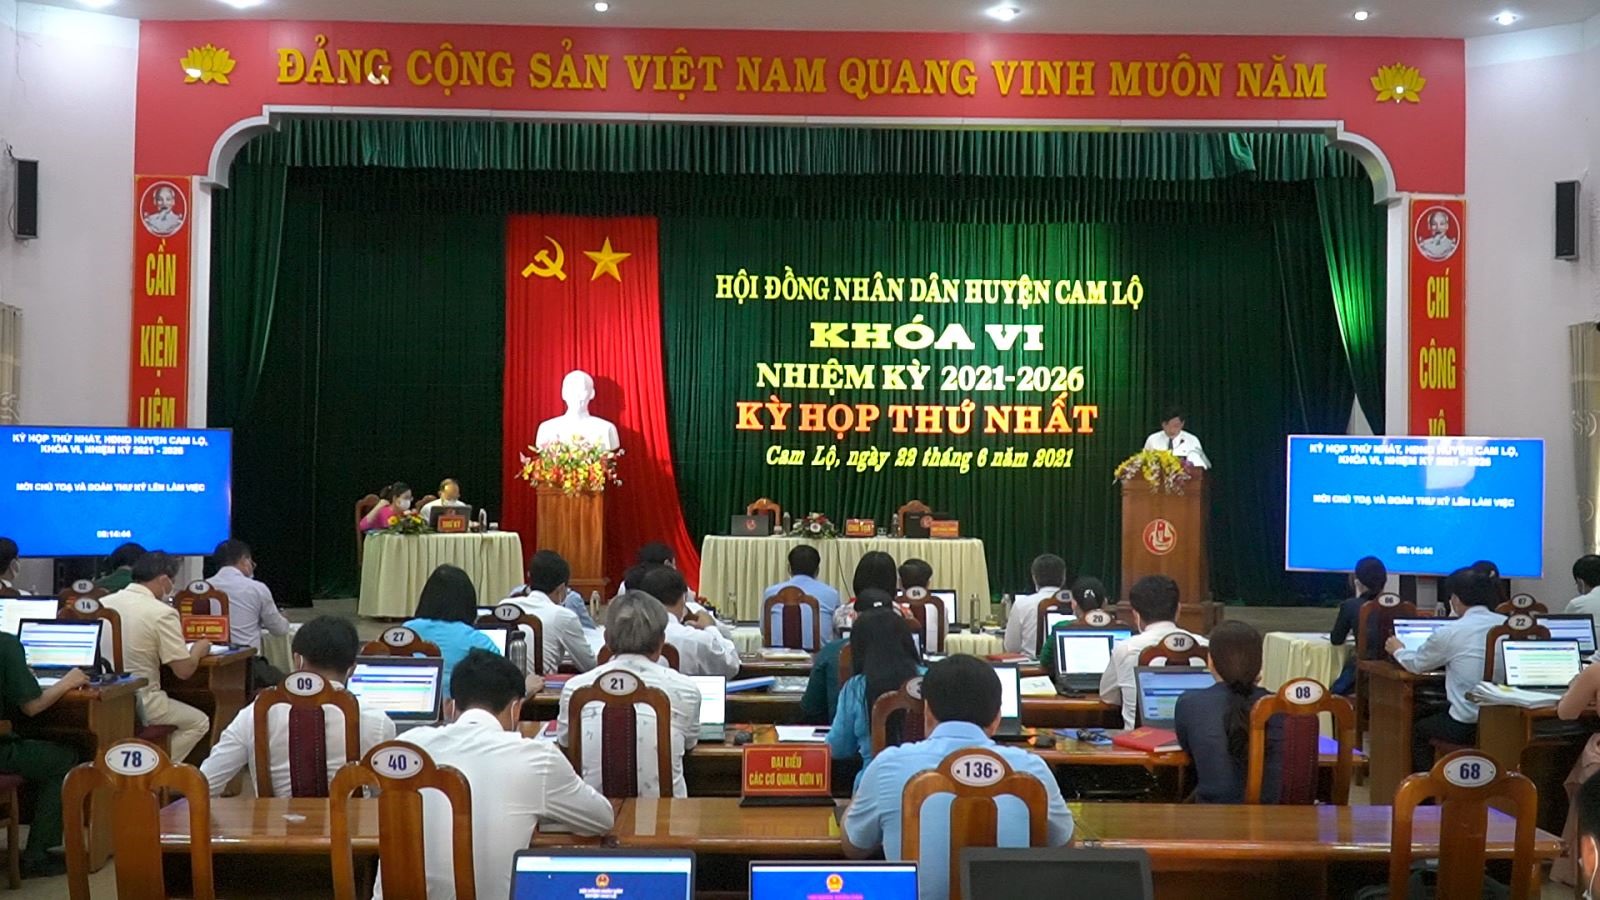 Các đại biểu dự họp HĐND huyện Cam Lộ xử lý công việc liên quan đến kỳ họp qua hệ thống máy tính